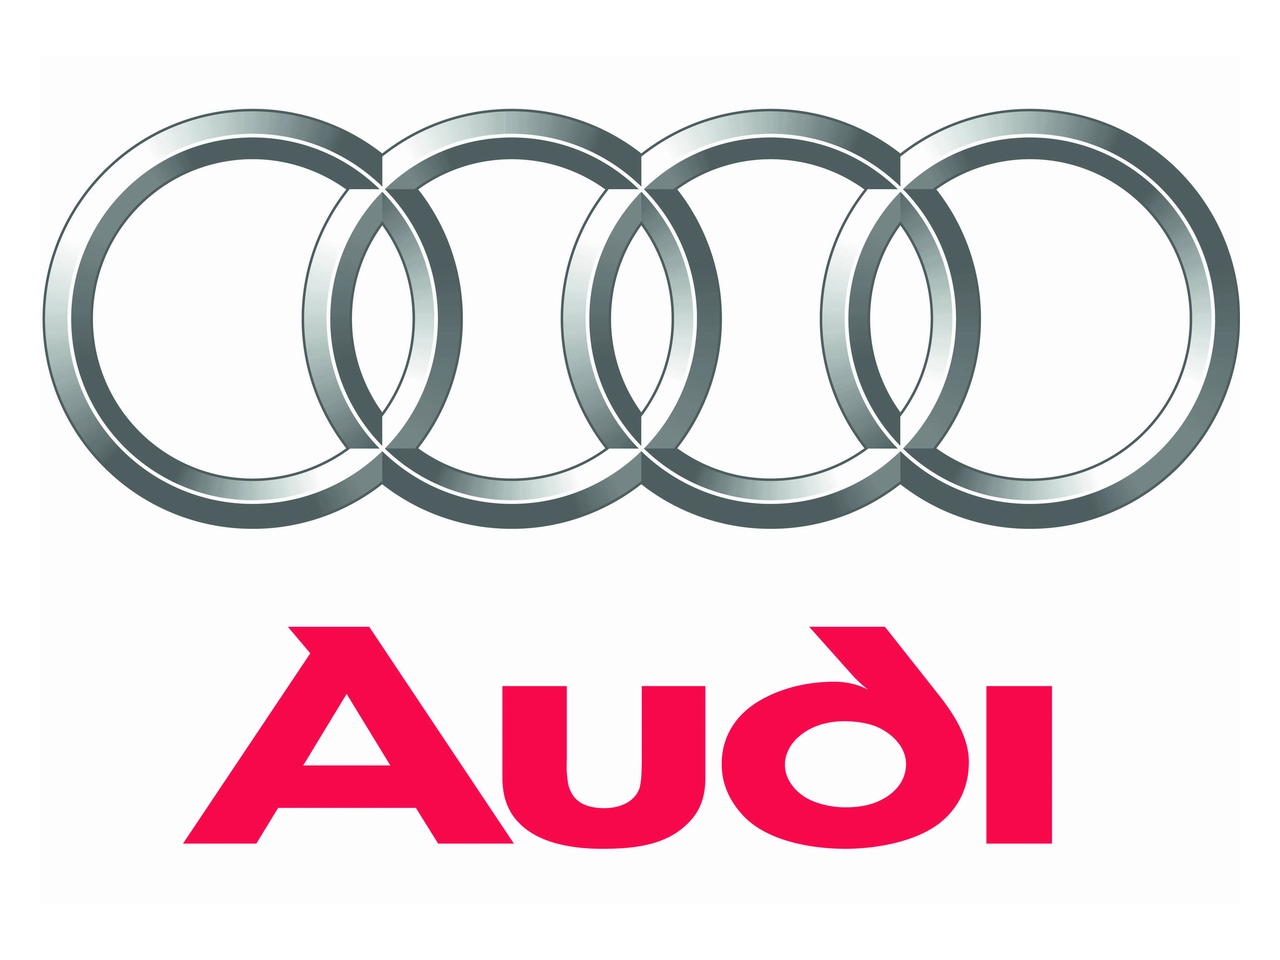 Audi symbol Wallpaper